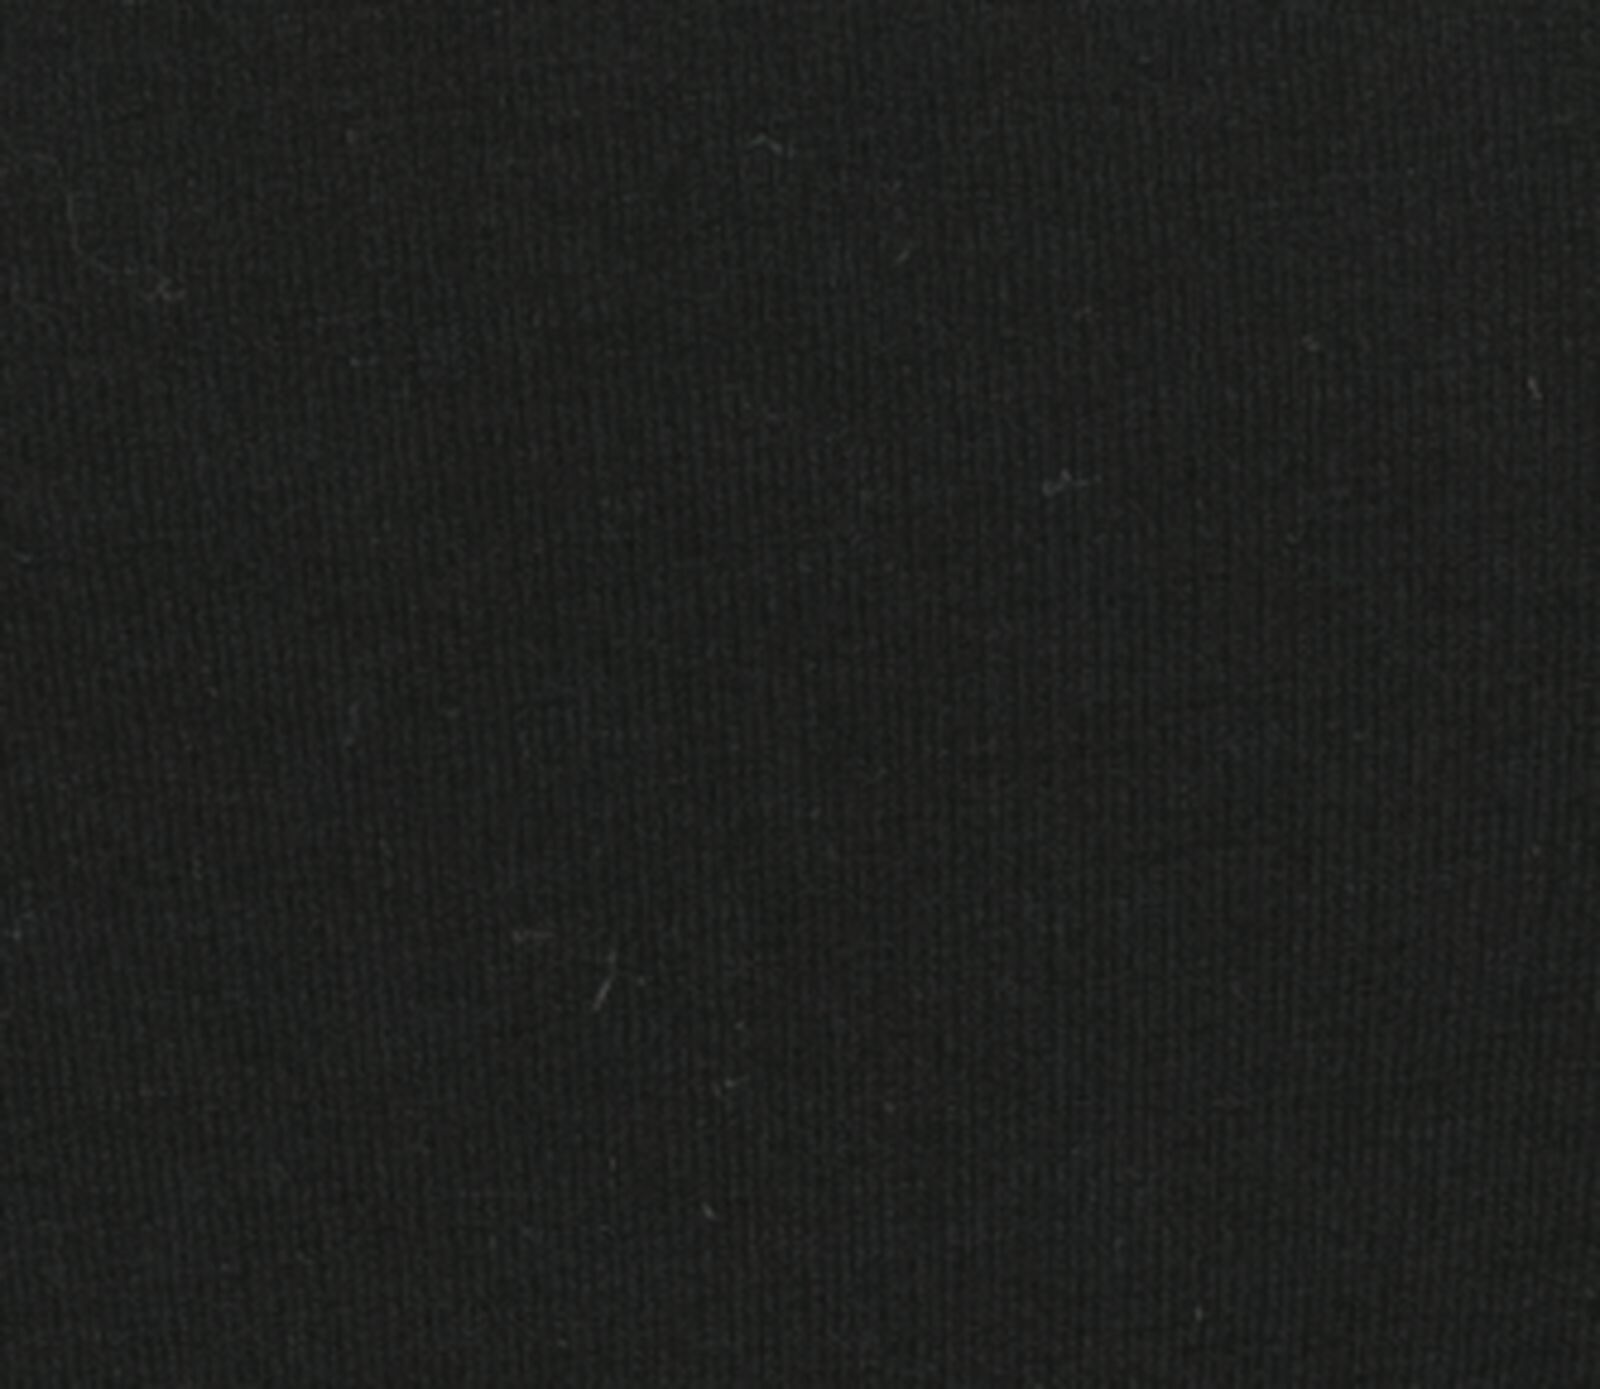 dameshemd katoen zwart XXL - 19681006 - HEMA